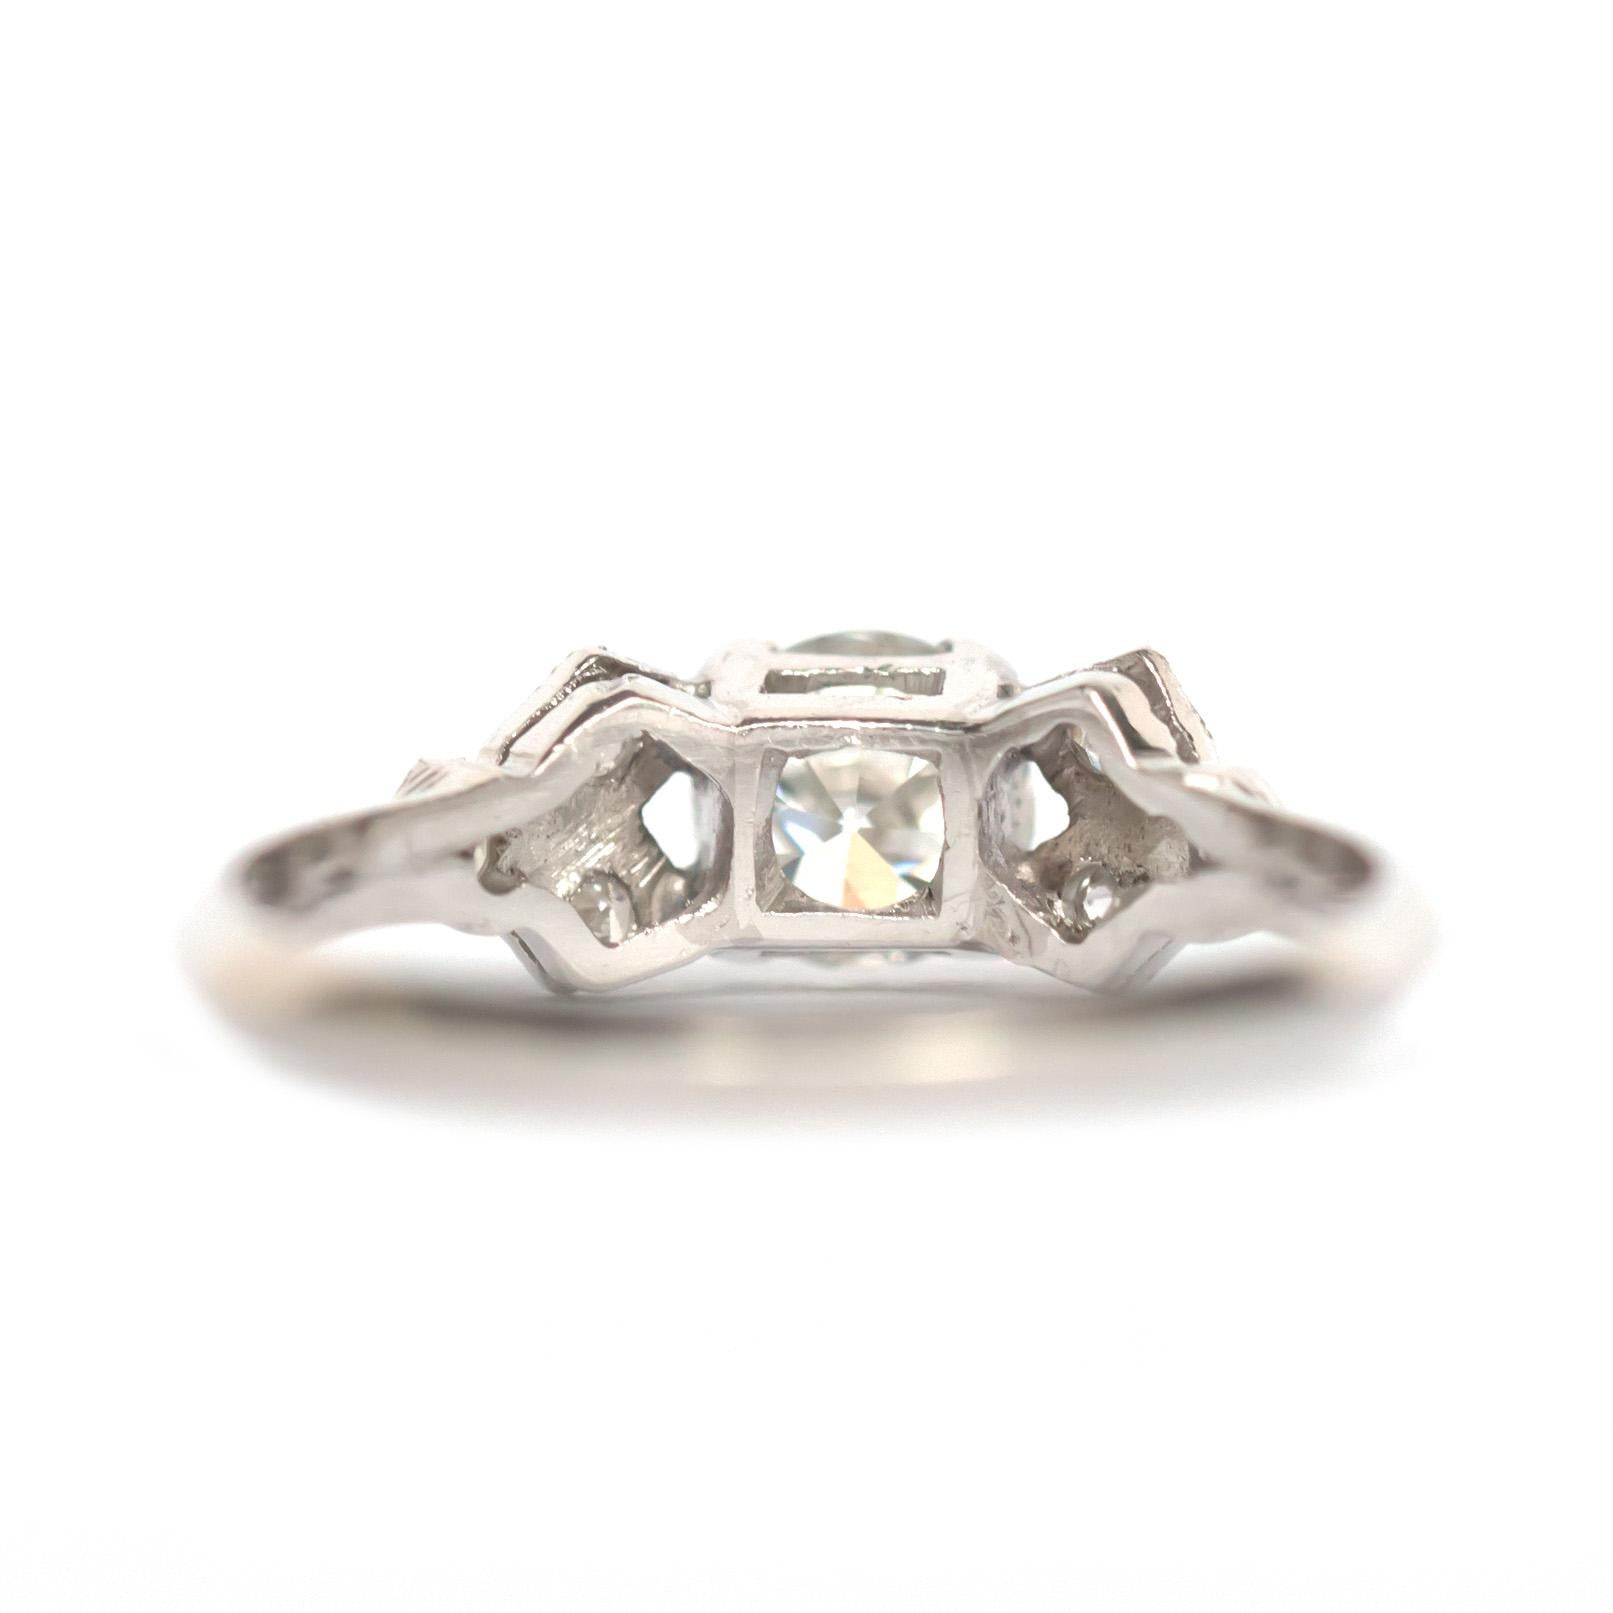 53-carat diamond ring price